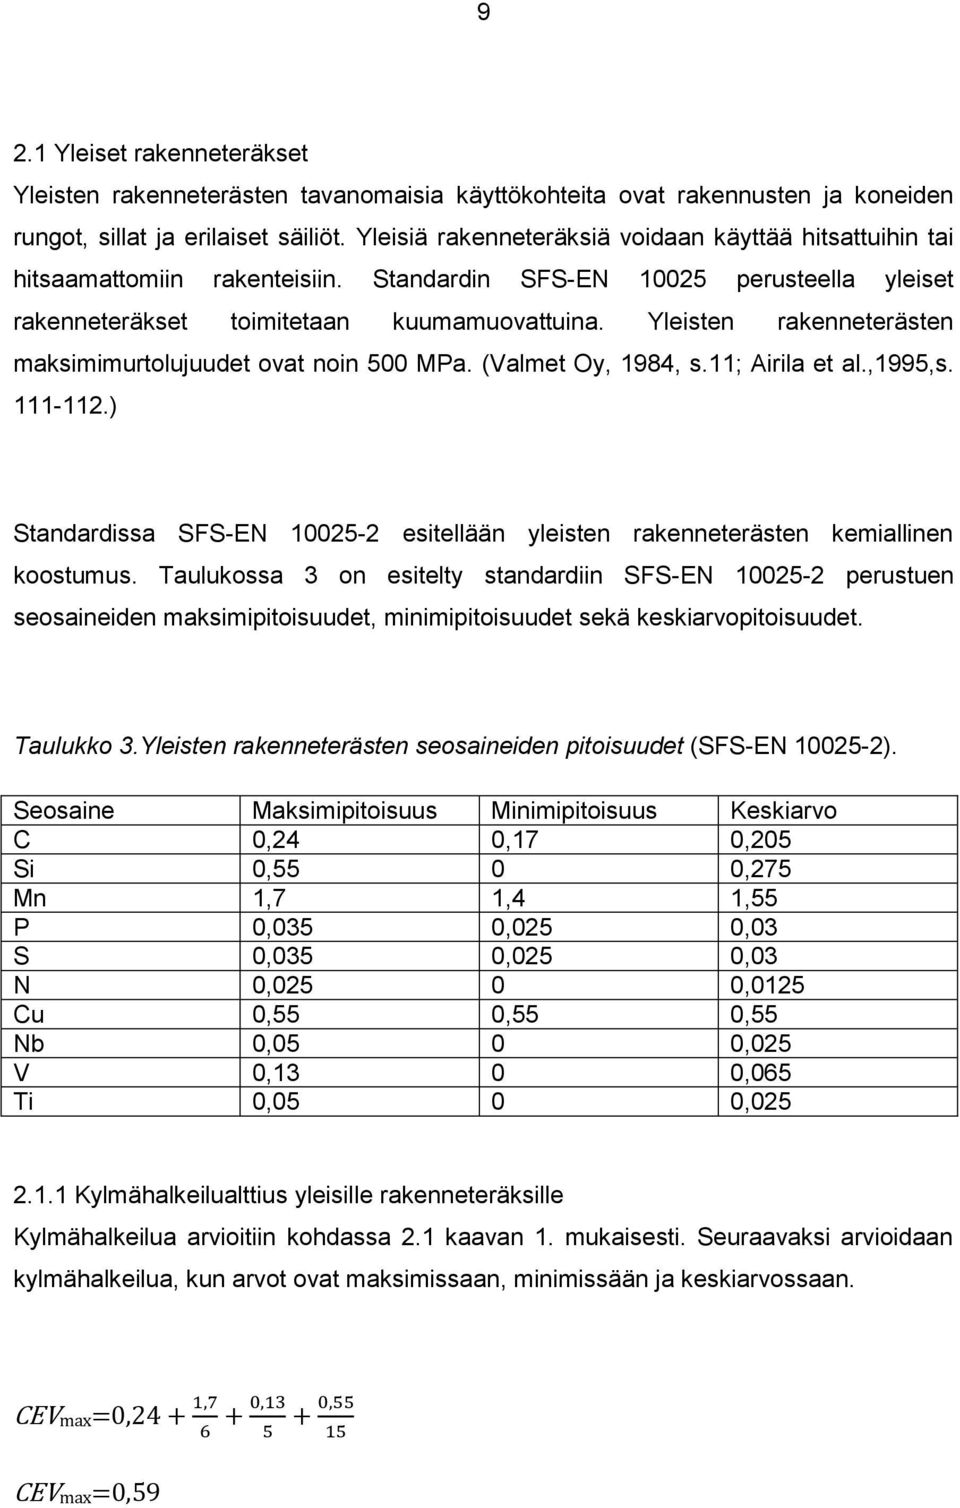 Yleisten rakenneterästen maksimimurtolujuudet ovat noin 500 MPa. (Valmet Oy, 1984, s.11; Airila et al.,1995,s. 111-112.